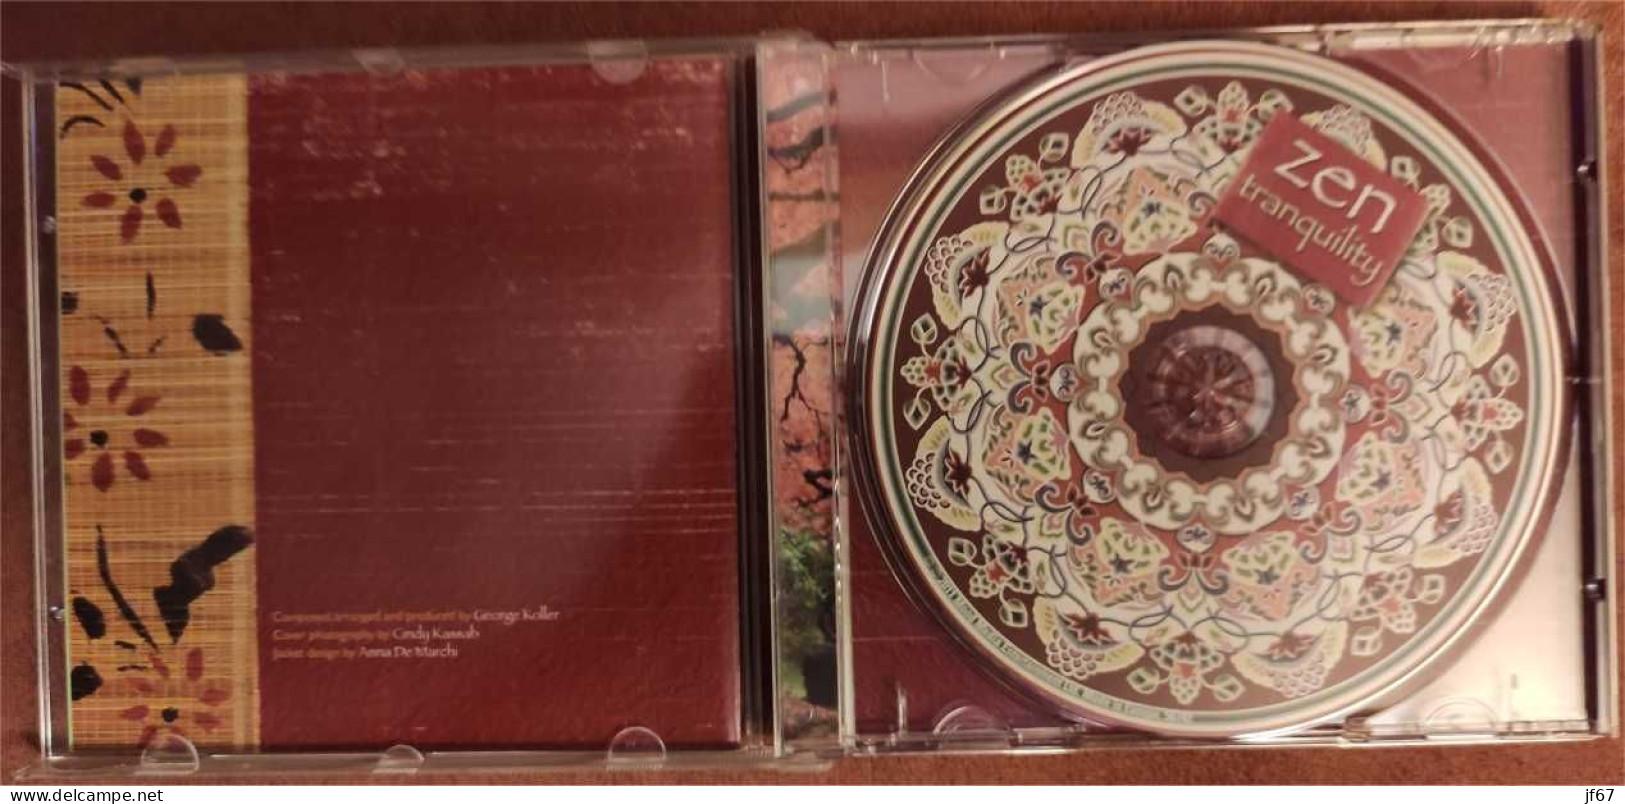 Zen Tranquility (CD) - Altri & Non Classificati